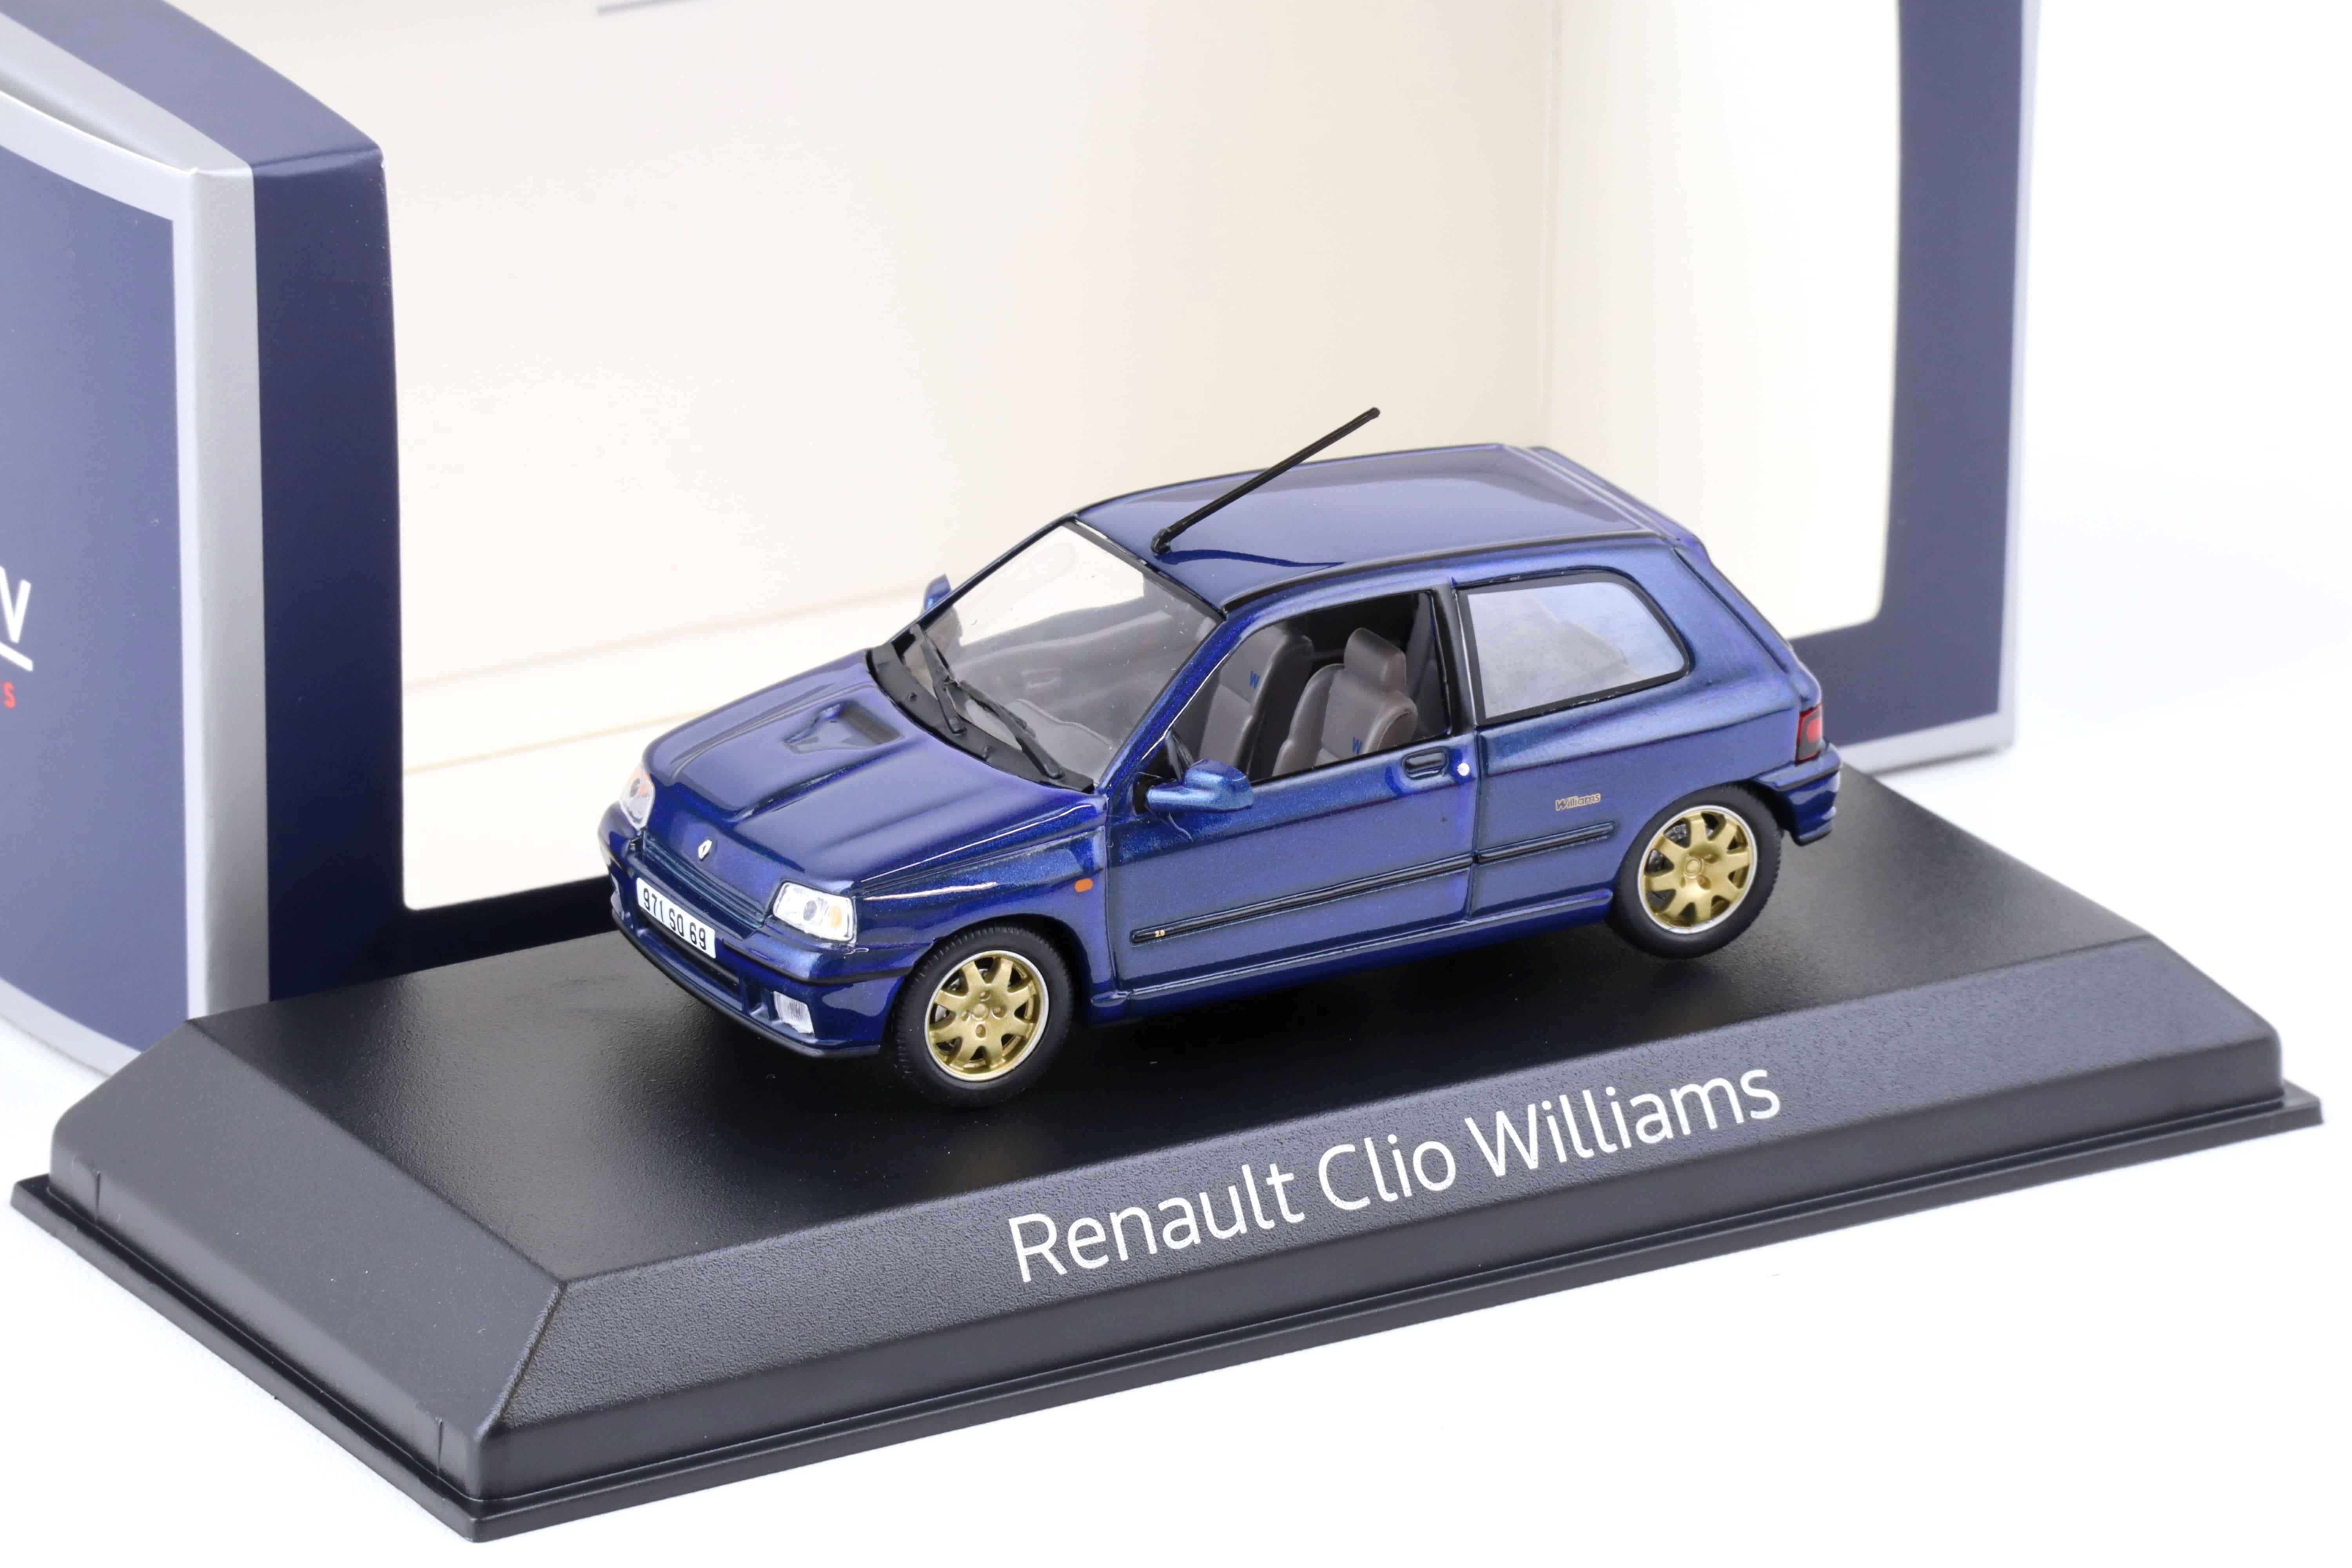 1:43 Norev Renault Clio Williams 1996 metallic blue